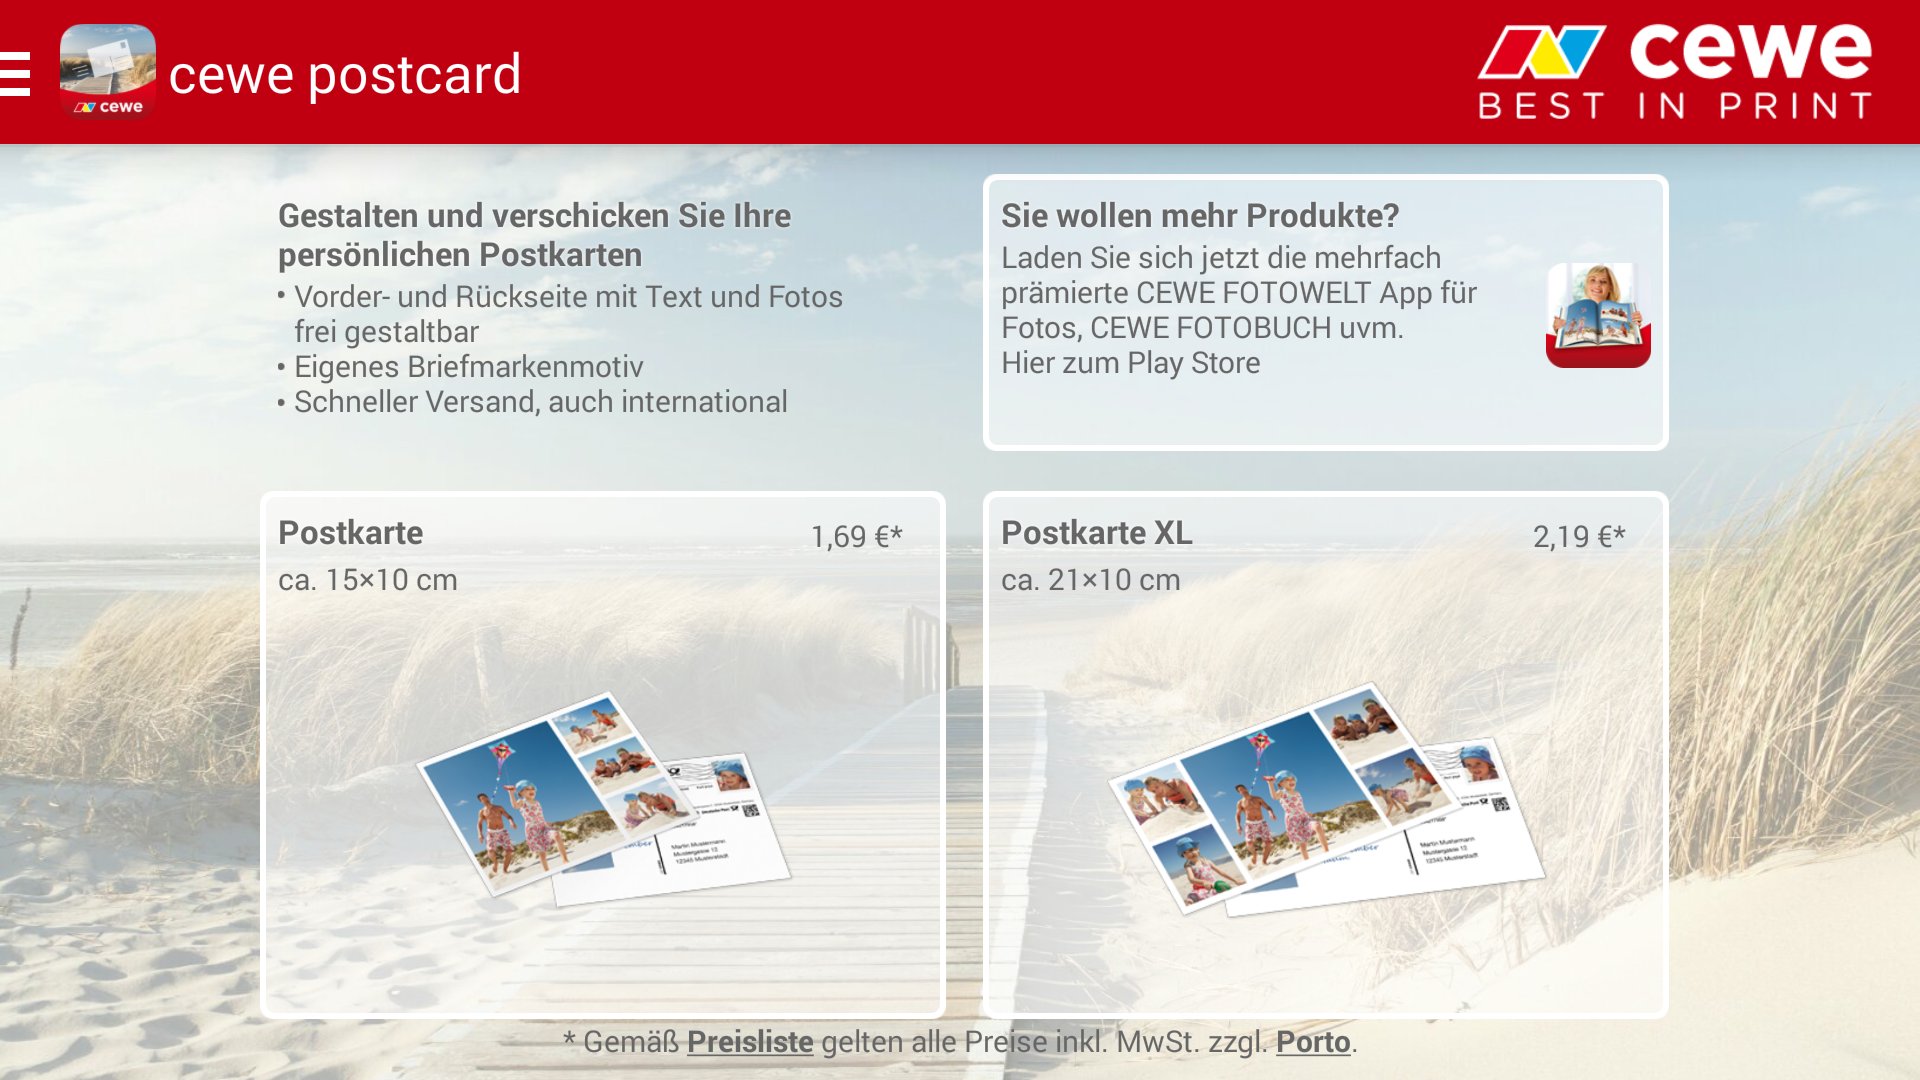 Cewe Postcard Urlaubsgrusse Vom Smartphone Als Postkarte Versenden